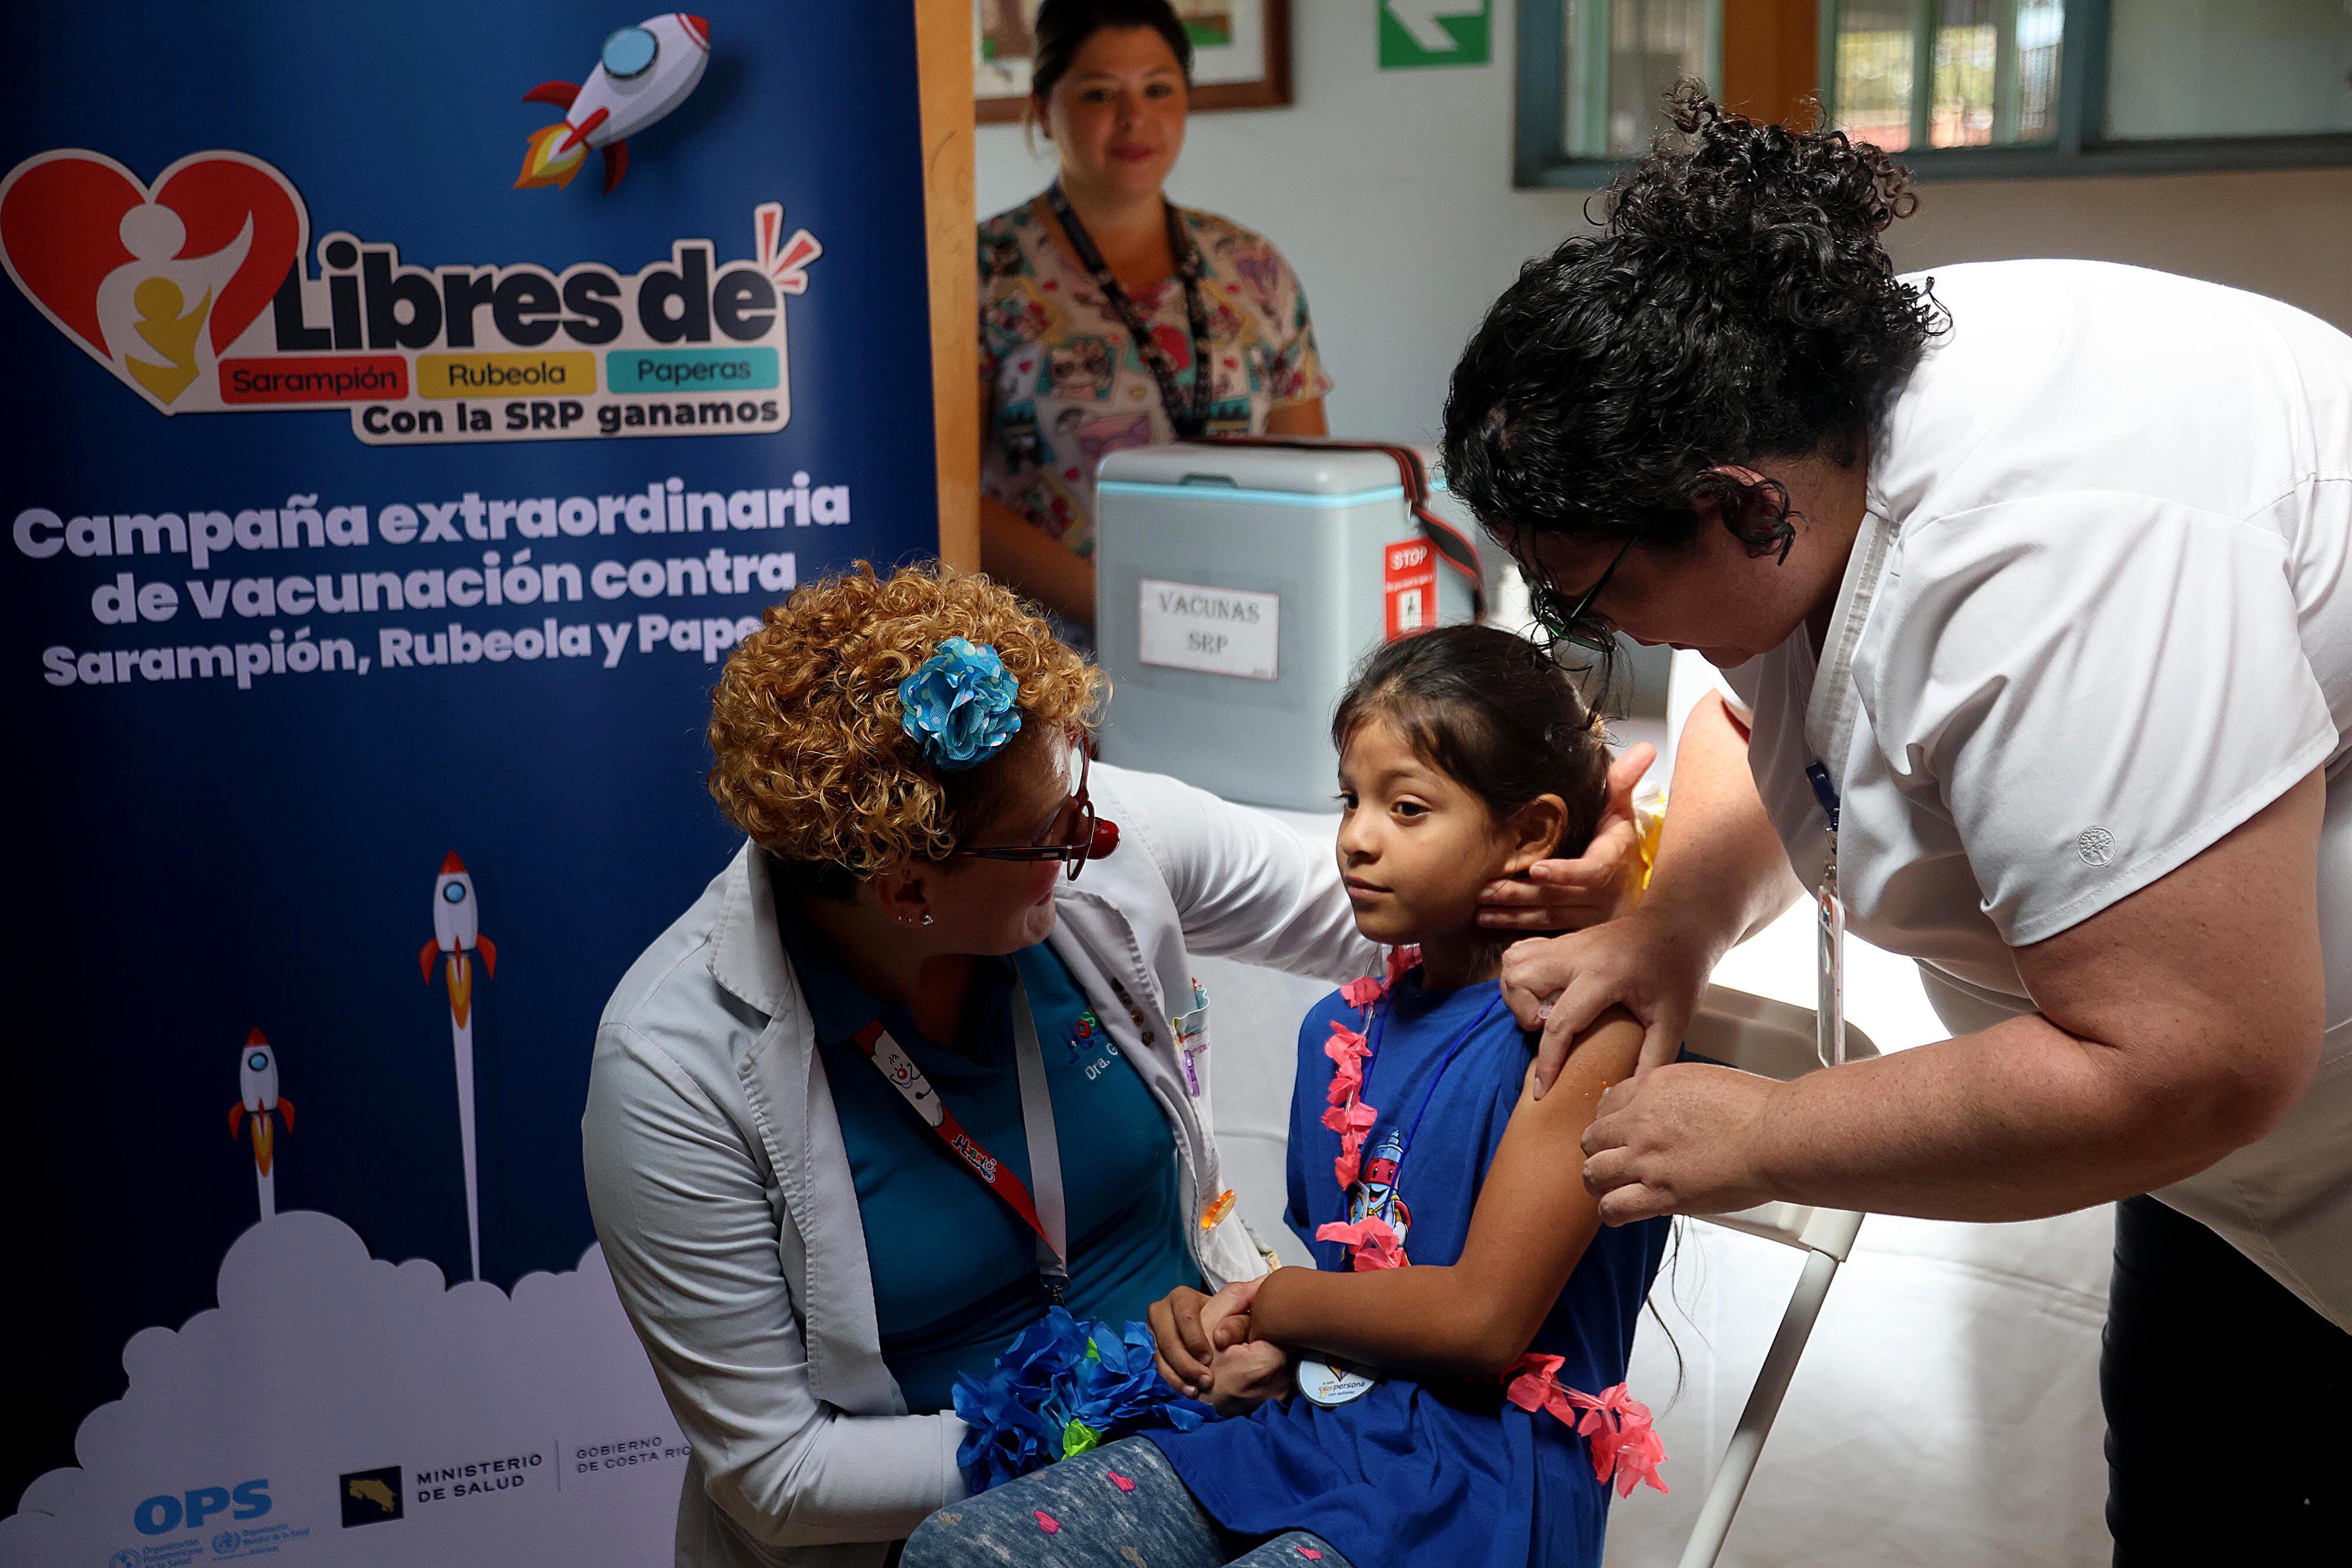 La campaña de vacunación extraordinaria contra sarampión lleva un 70% de avance, pero los grupos antivacunas lo dificultan.